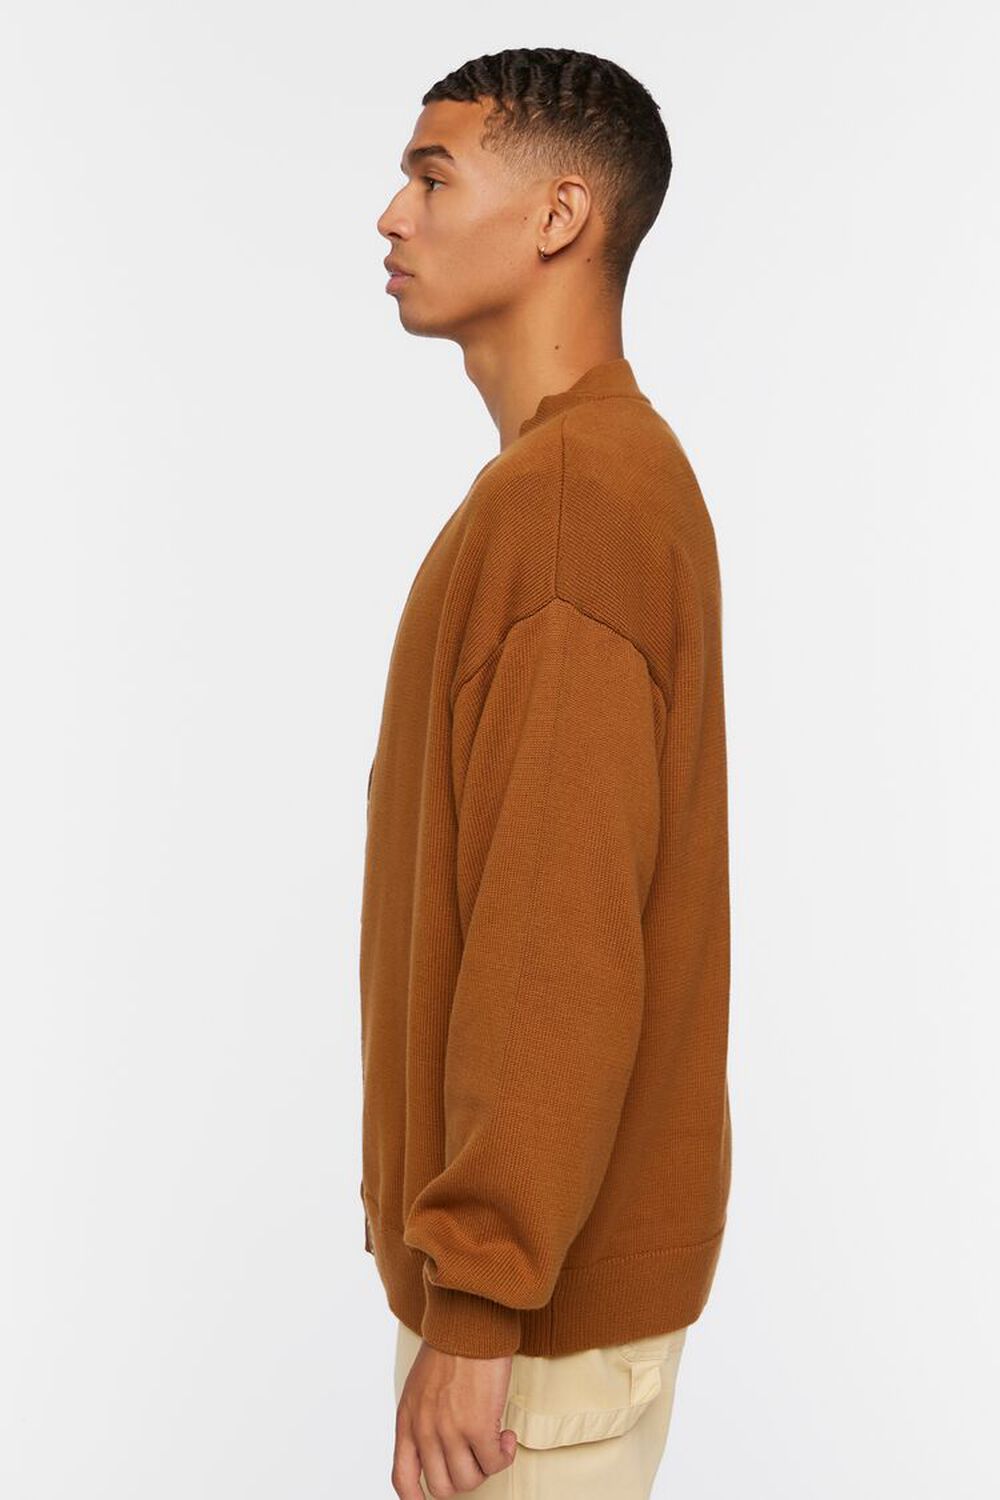 TAN Drop-Sleeve Cardigan Sweater, image 2